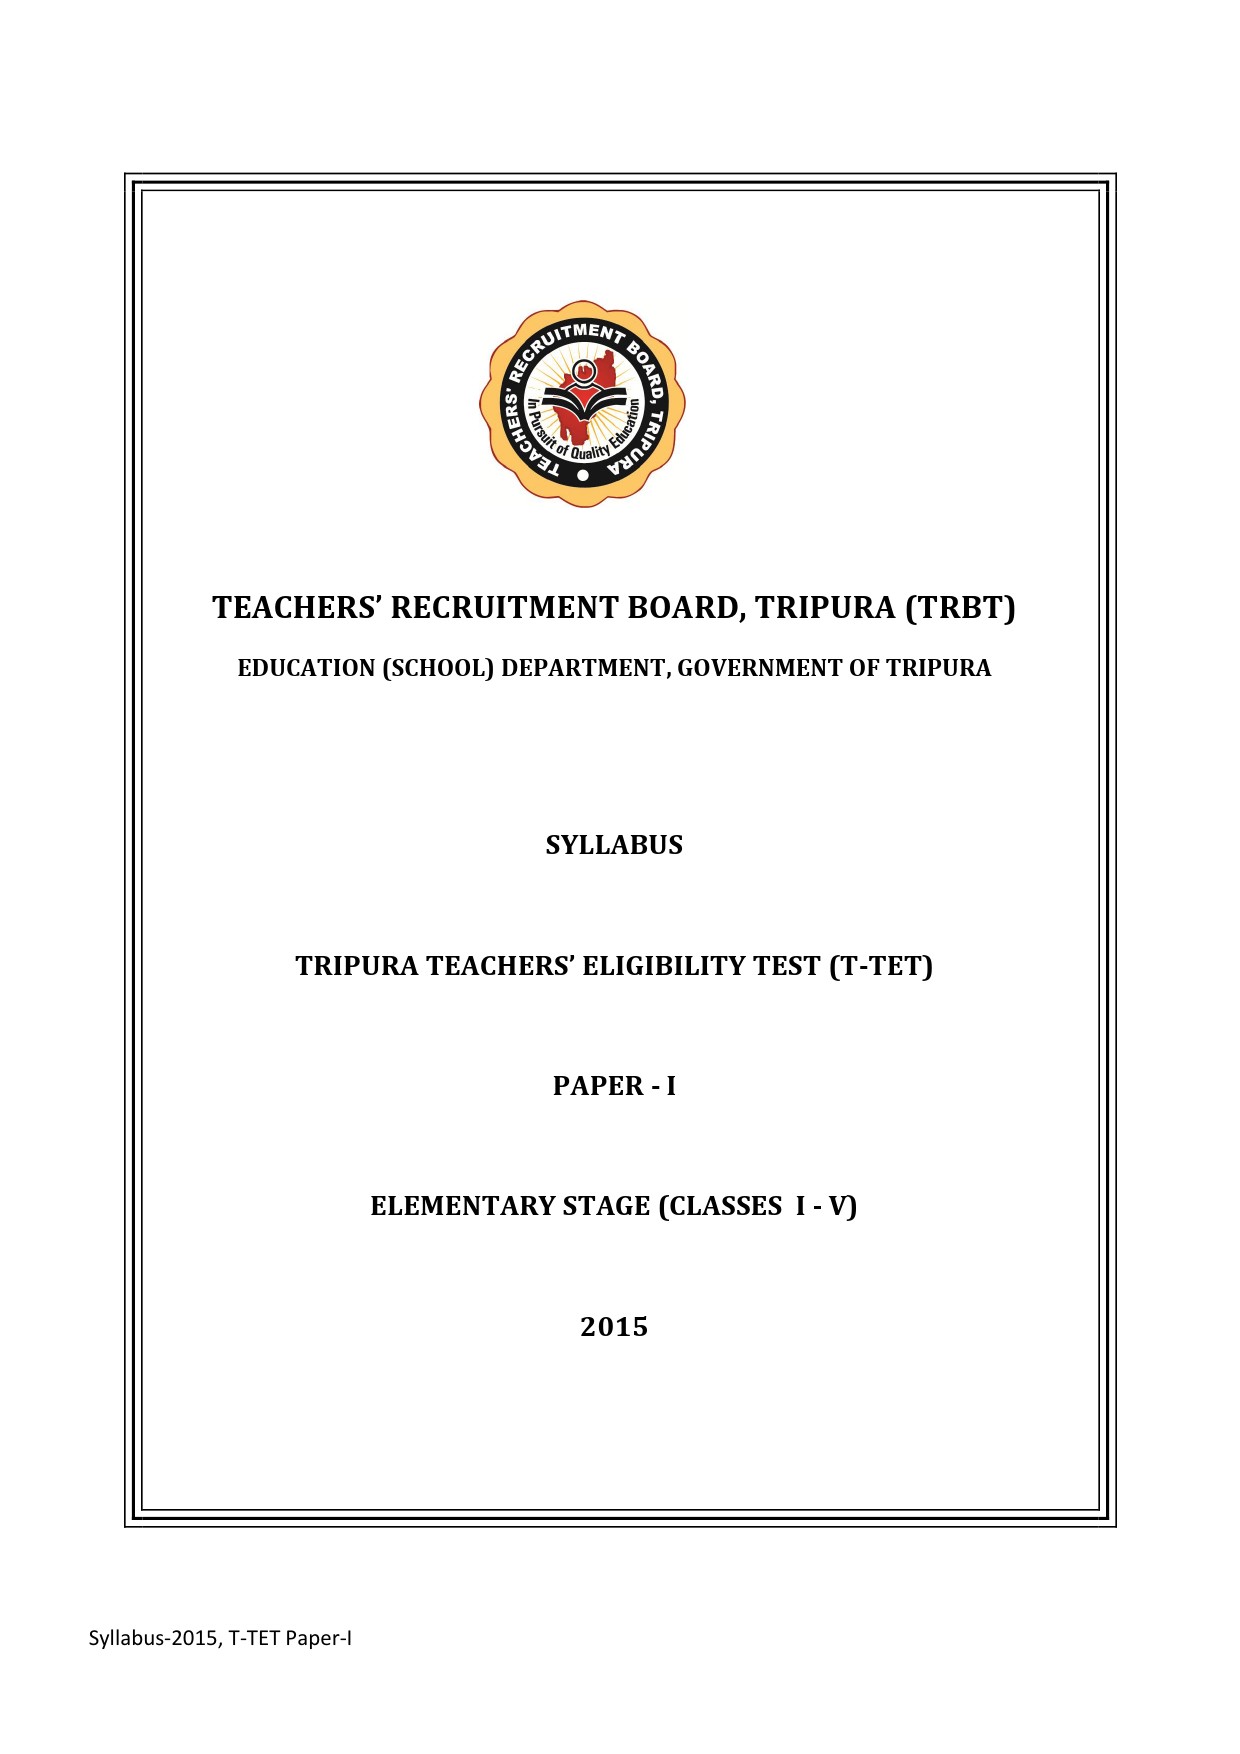 Syllabus of T-TET Paper-I 1